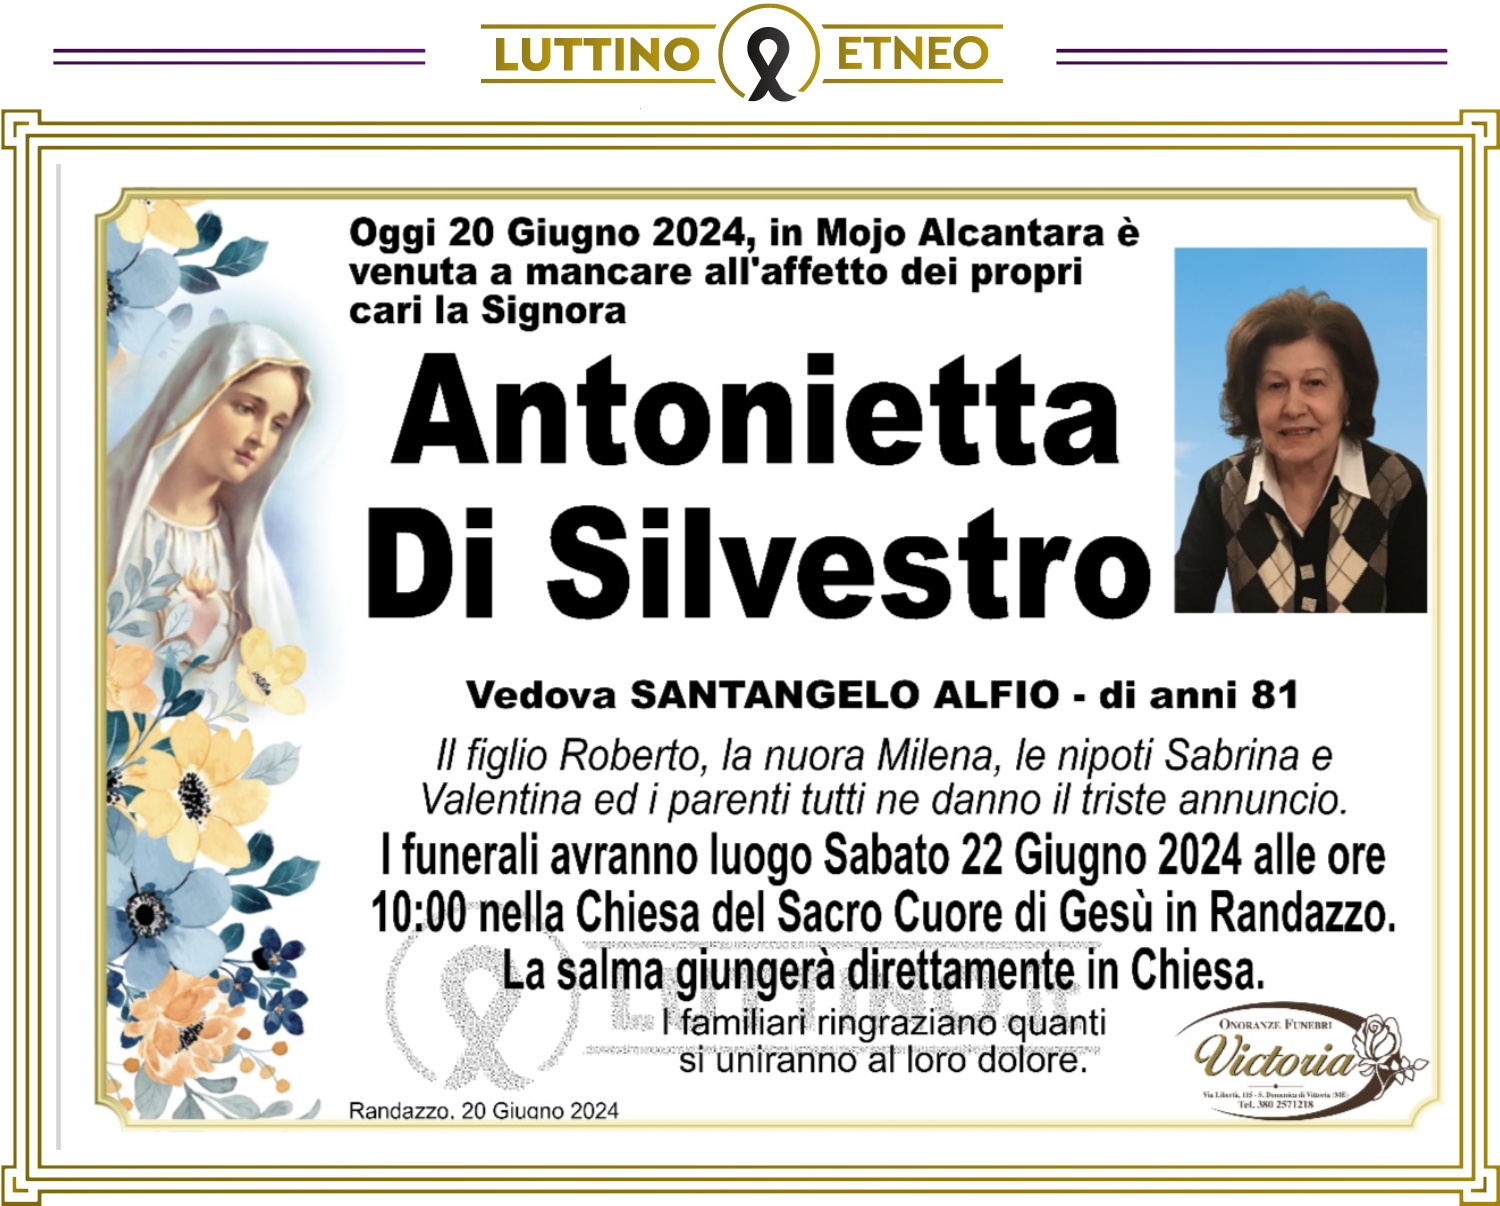 Antonietta Di Silvestro